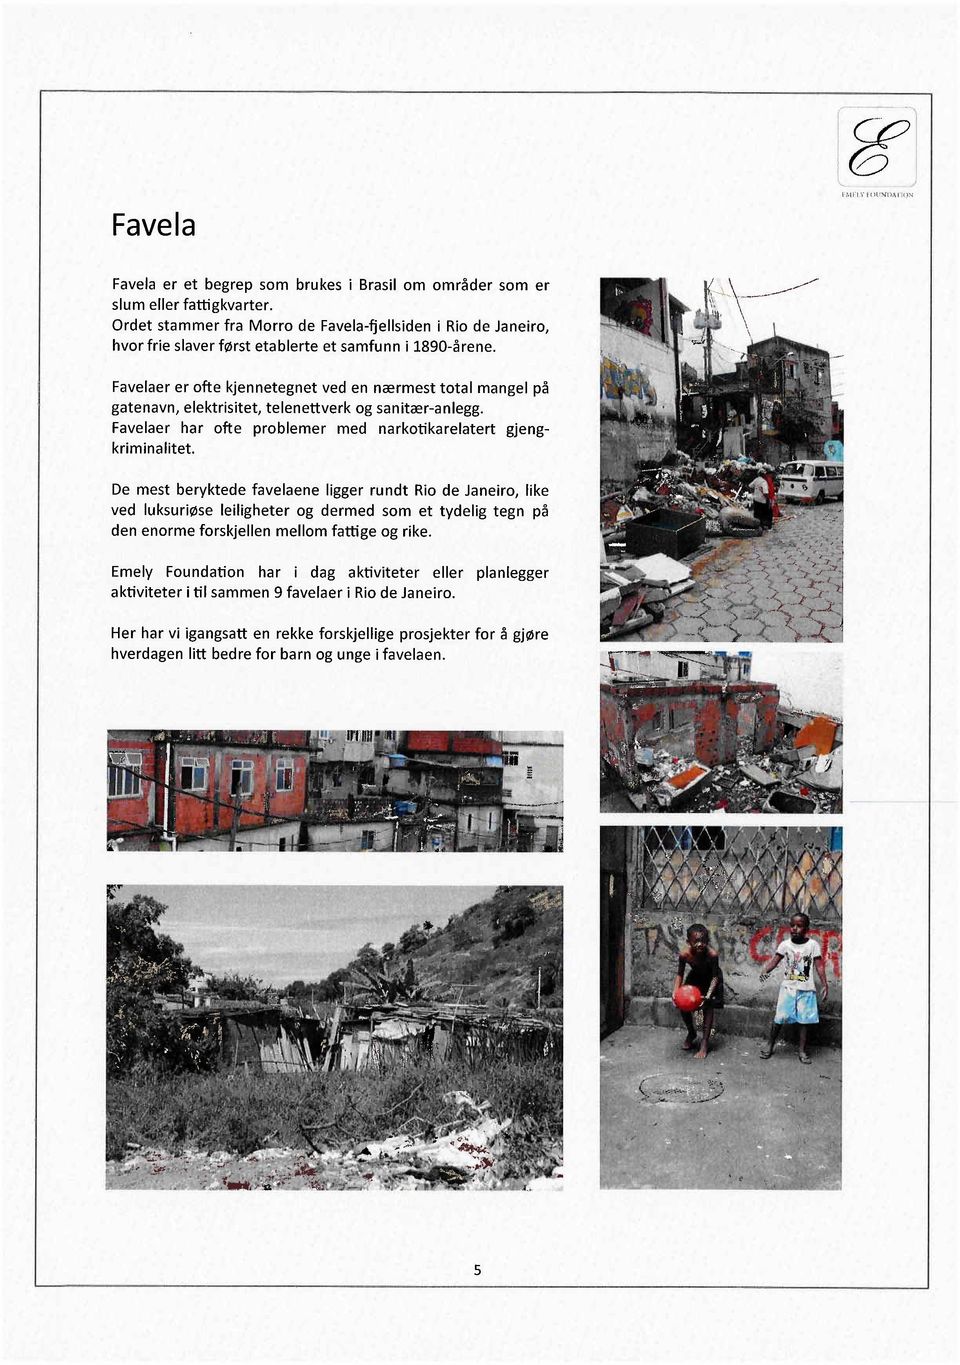 Favelaer er ofte kjennetegnet ved en nærmest total mangel på gatenavn, elektrisitet, telenettverk og sanitær-anlegg. Favelaer har ofte problemer med narkotikarelatert gjengkriminalitet.